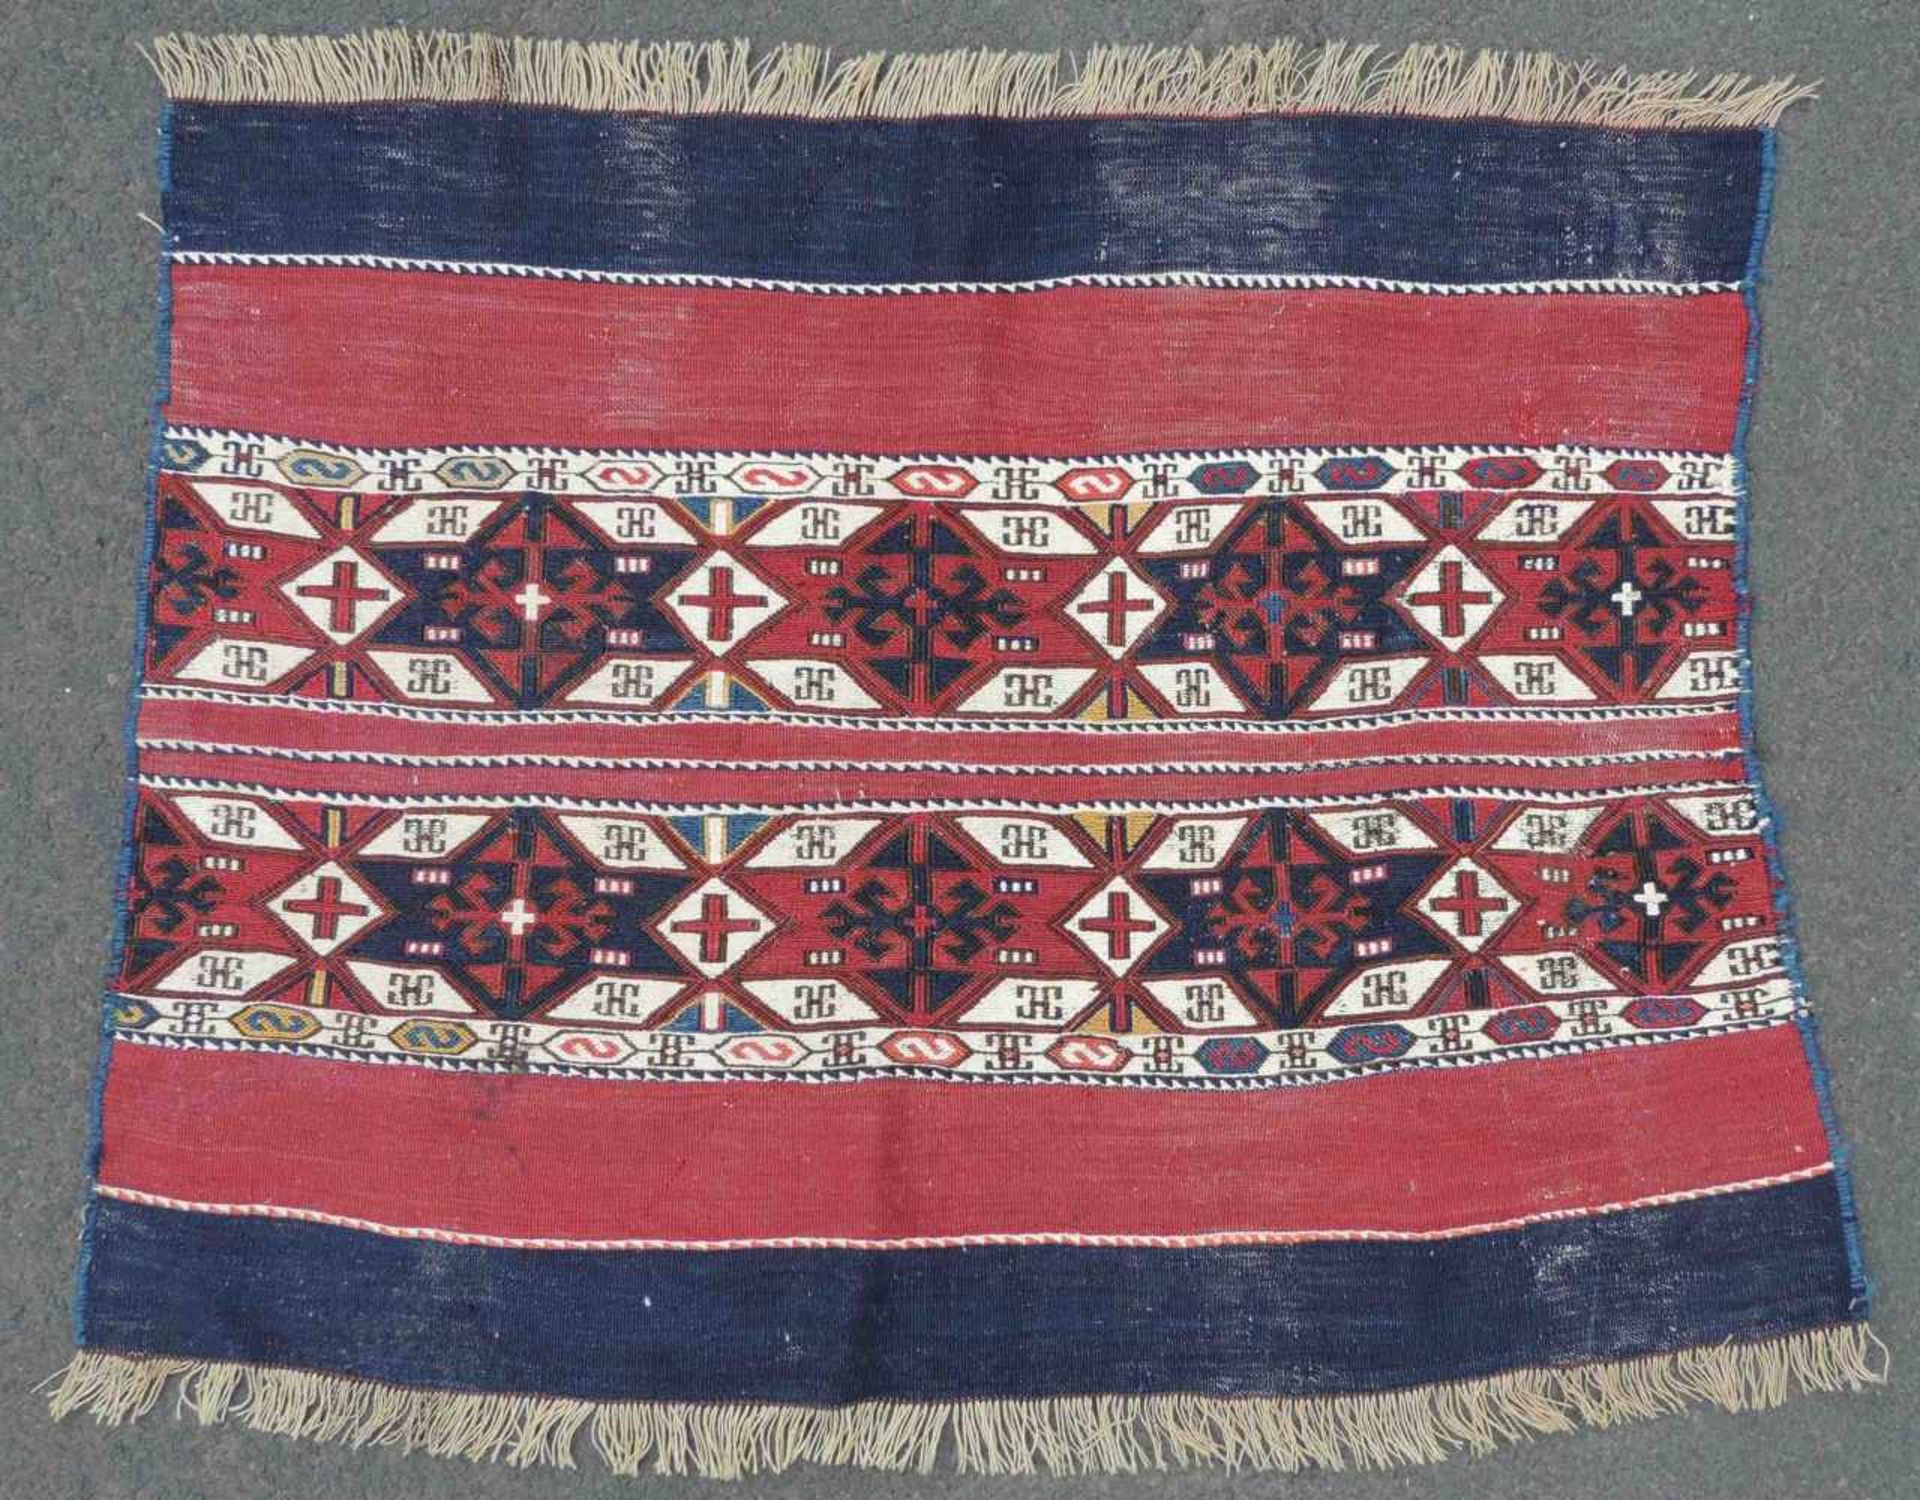 Bergama Sumak Kelim. Türkei. Antik, um 1890. 81 cm x 114 cm. Handgewebt. Wolle und Baumwolle auf